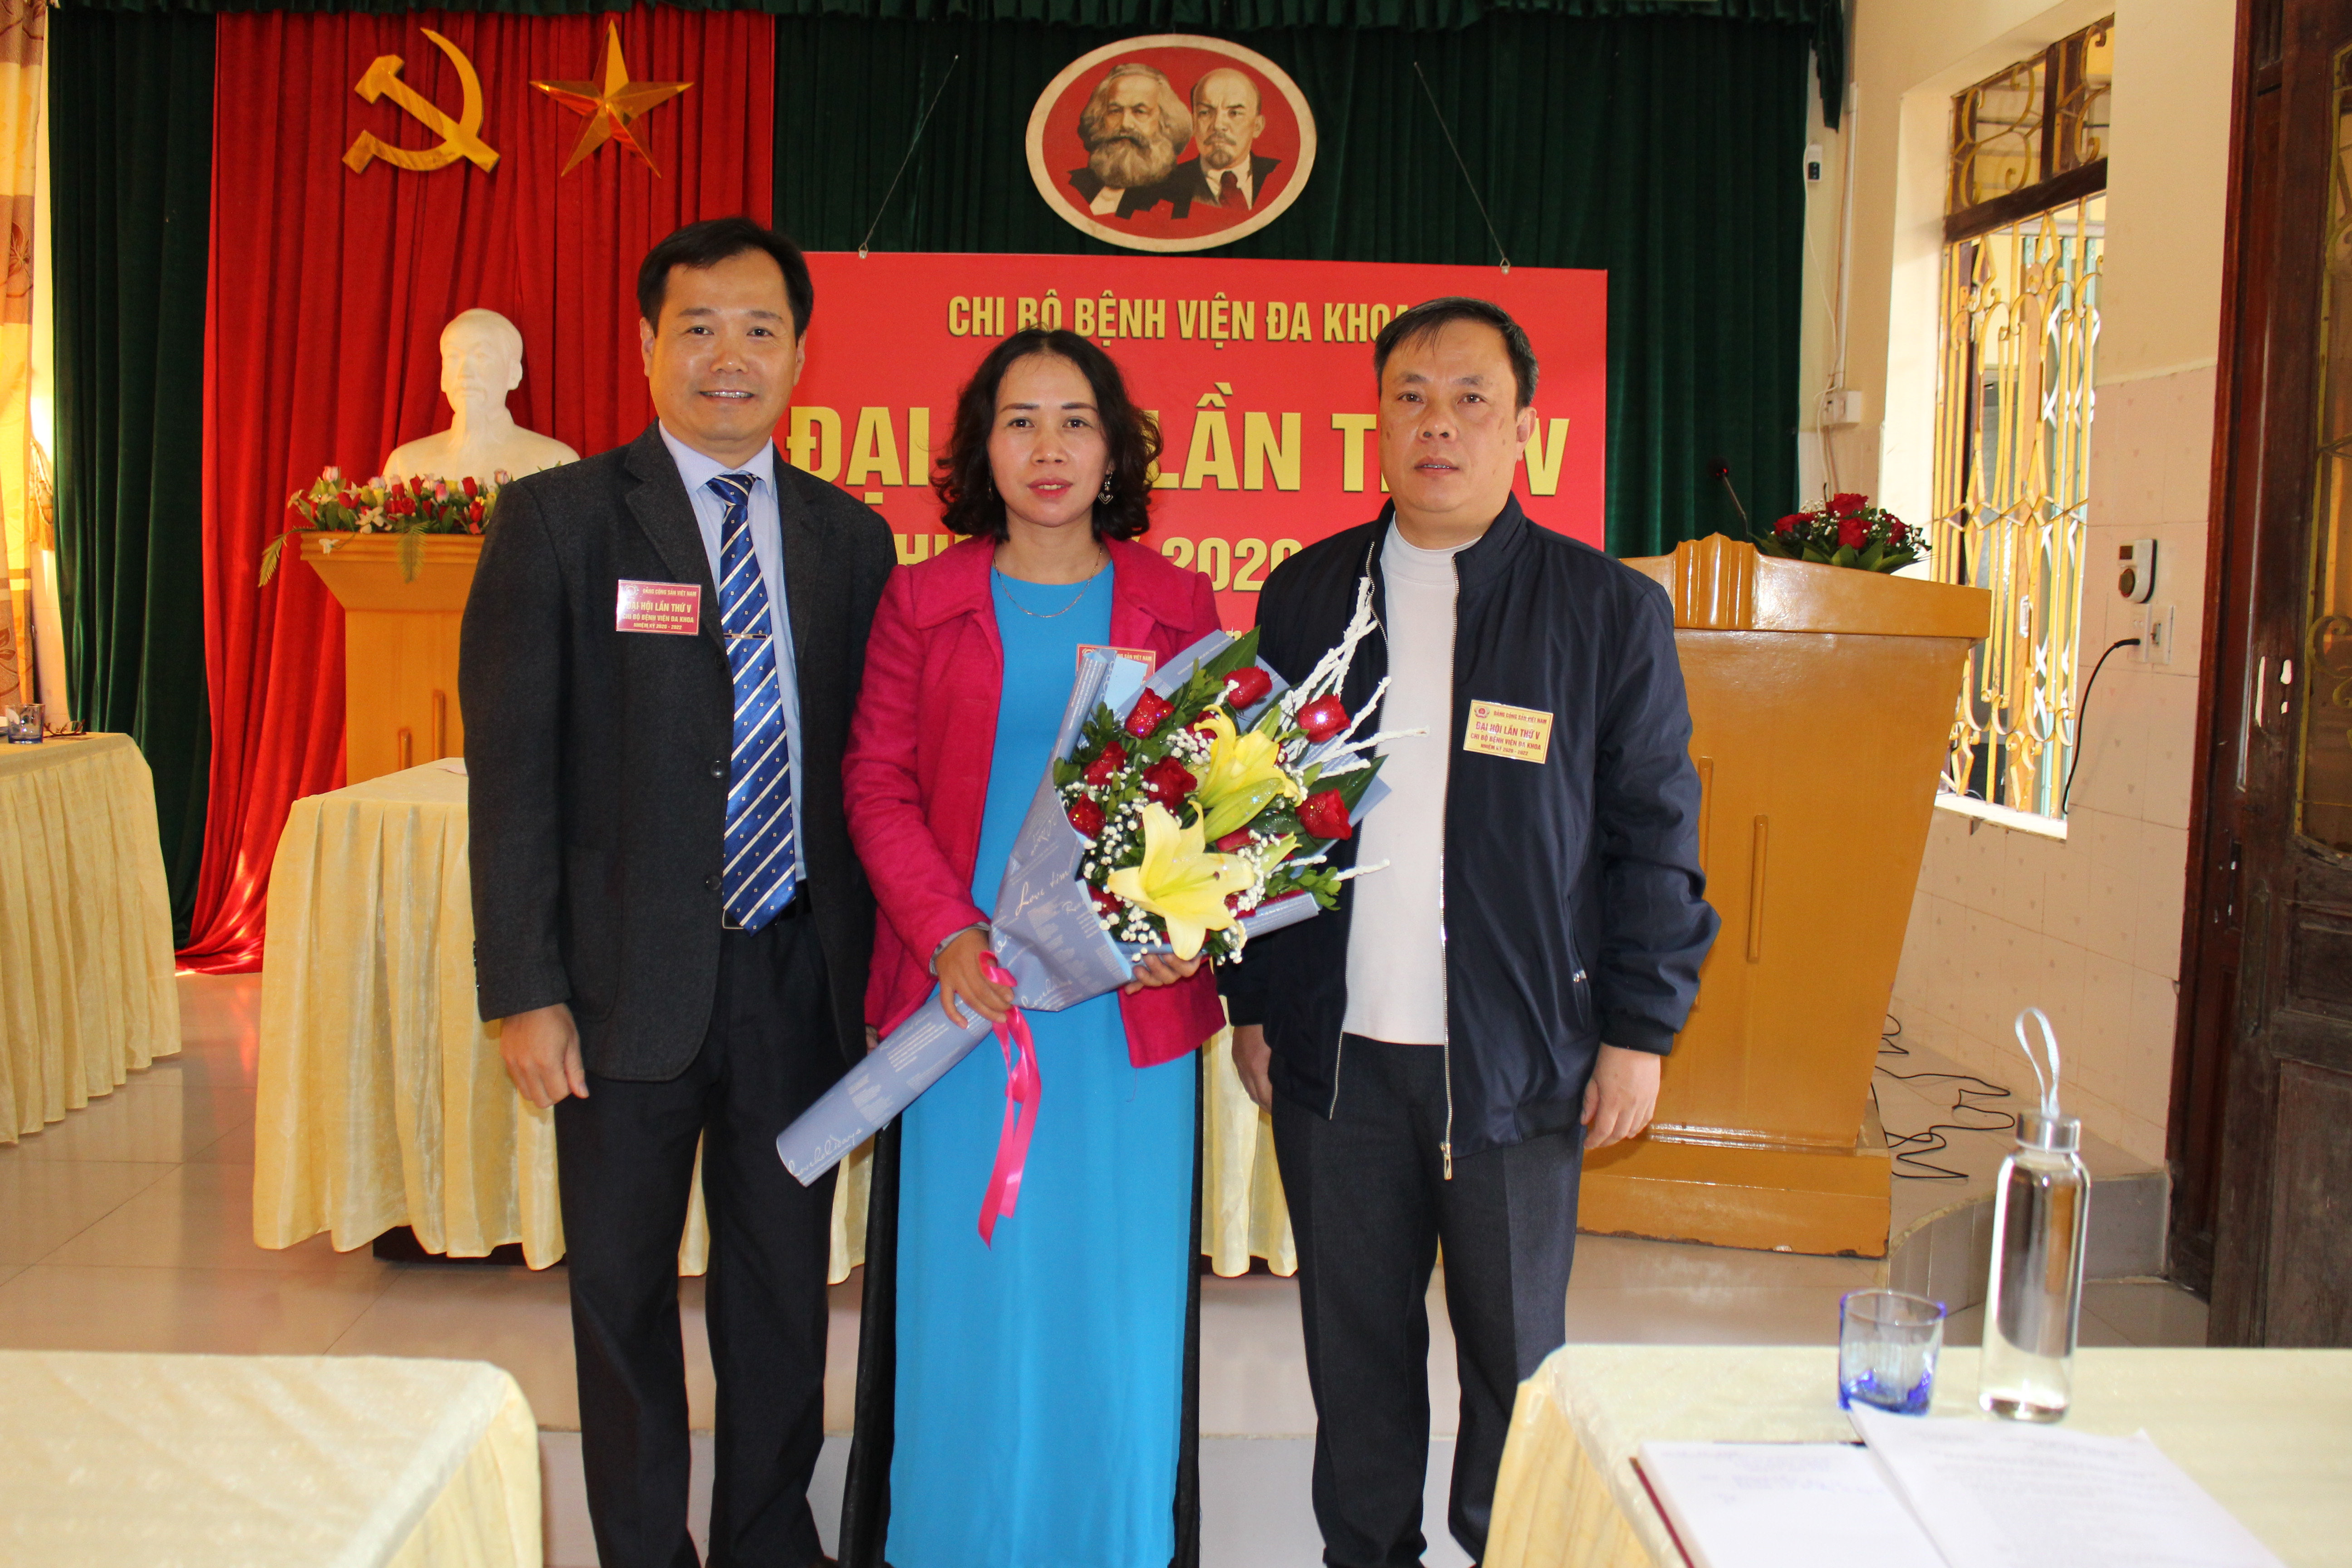 Đồng chí Dương Minh Sơn, Phó Bí thư Đảng ủy Y tế, Giám đốc Trung tâm DS-KHHGD huyện tặng hoa chúc mừng Ban Chi ủy Chi bộ Bệnh viện đa khoa huyện